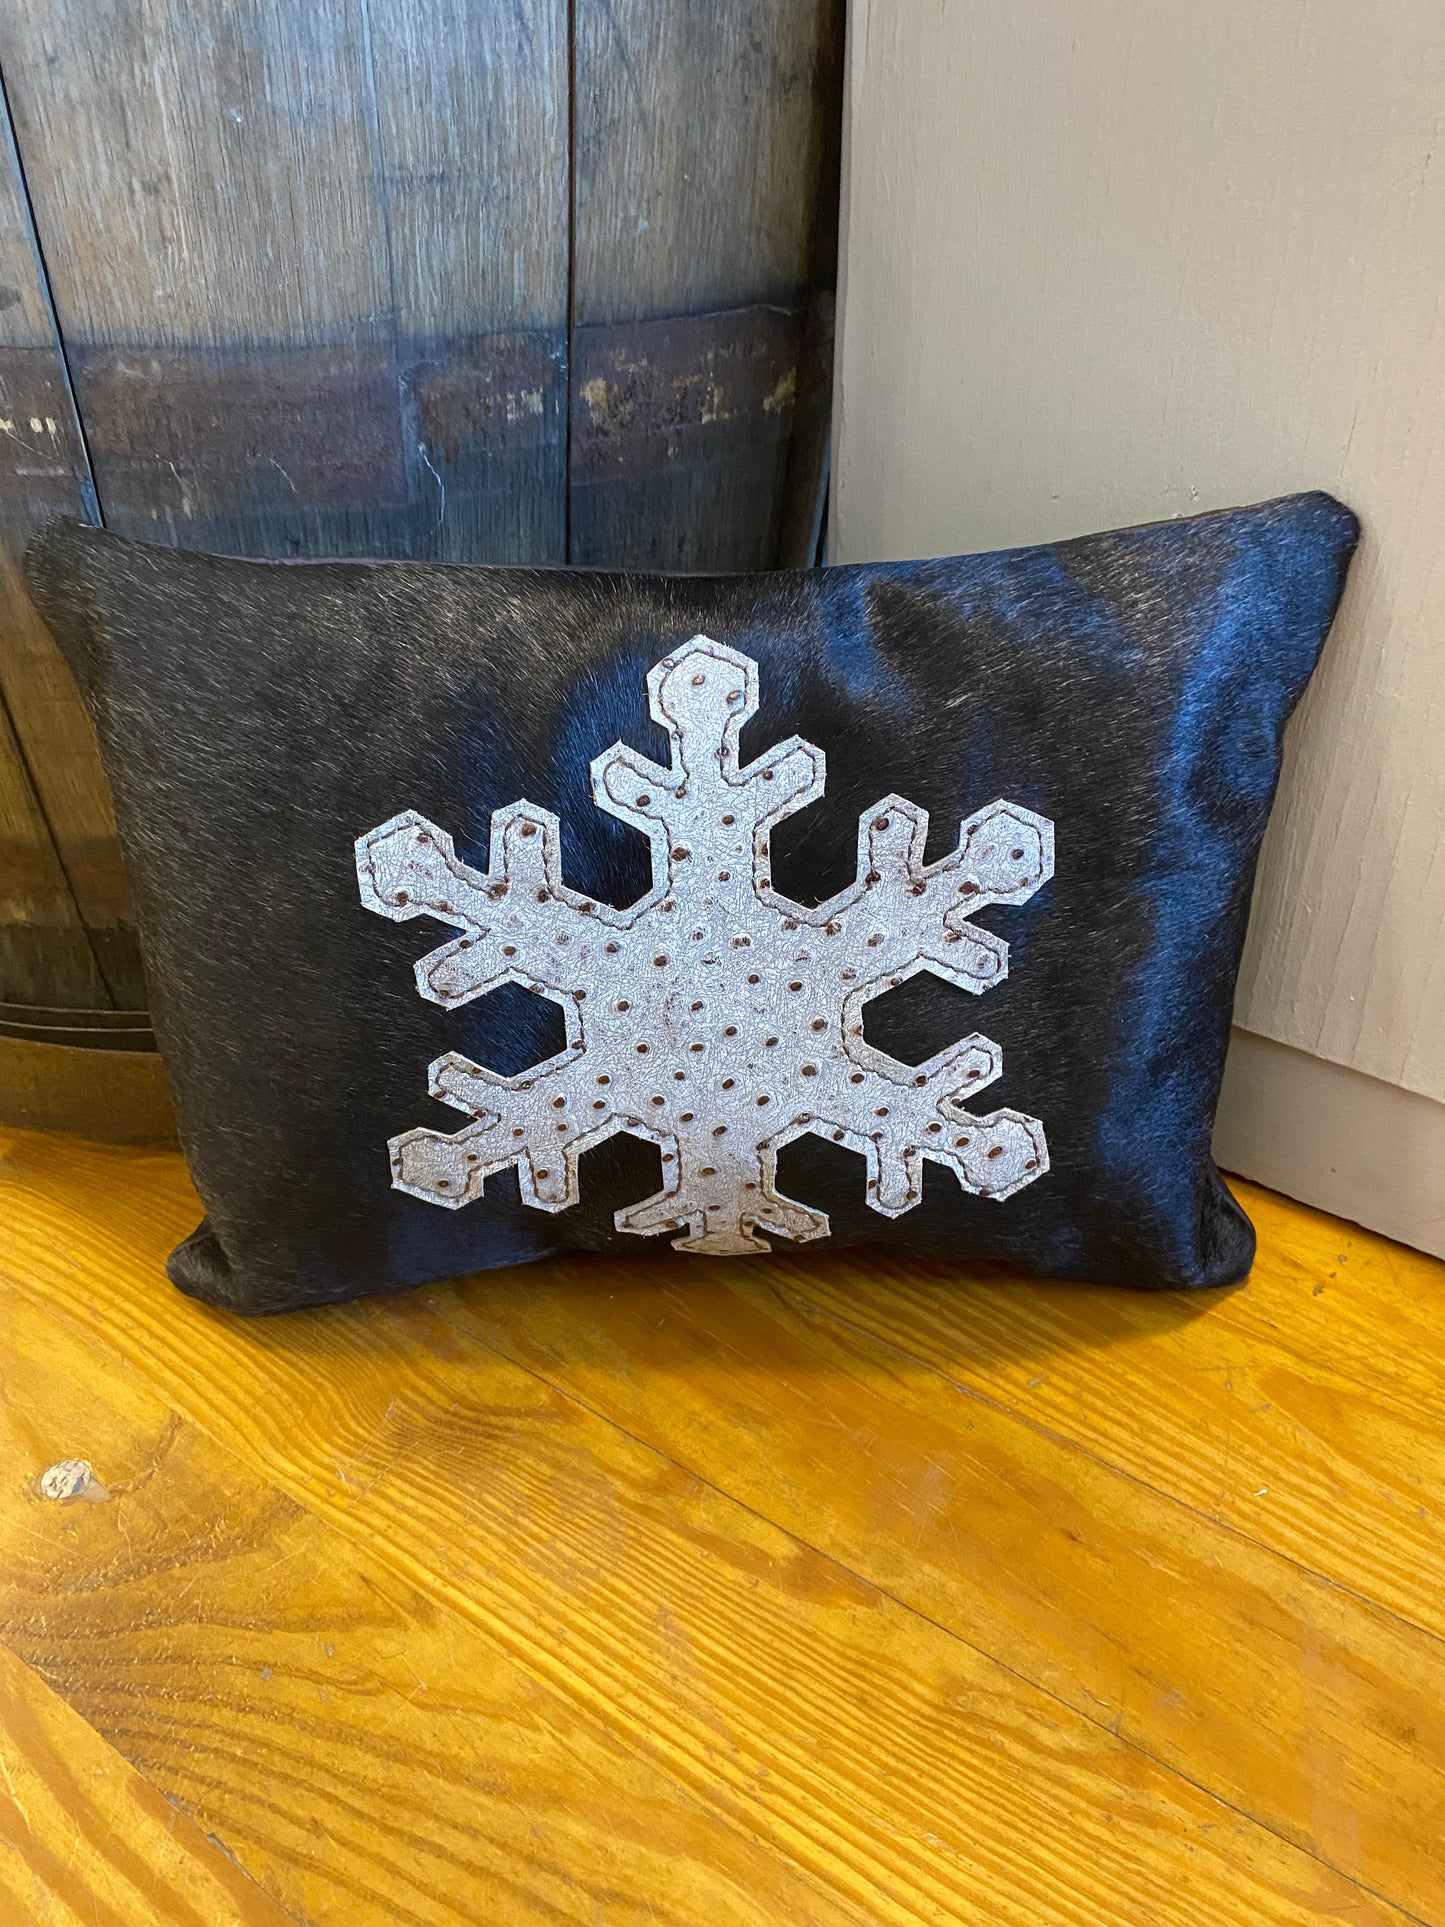 Snowflake pillows